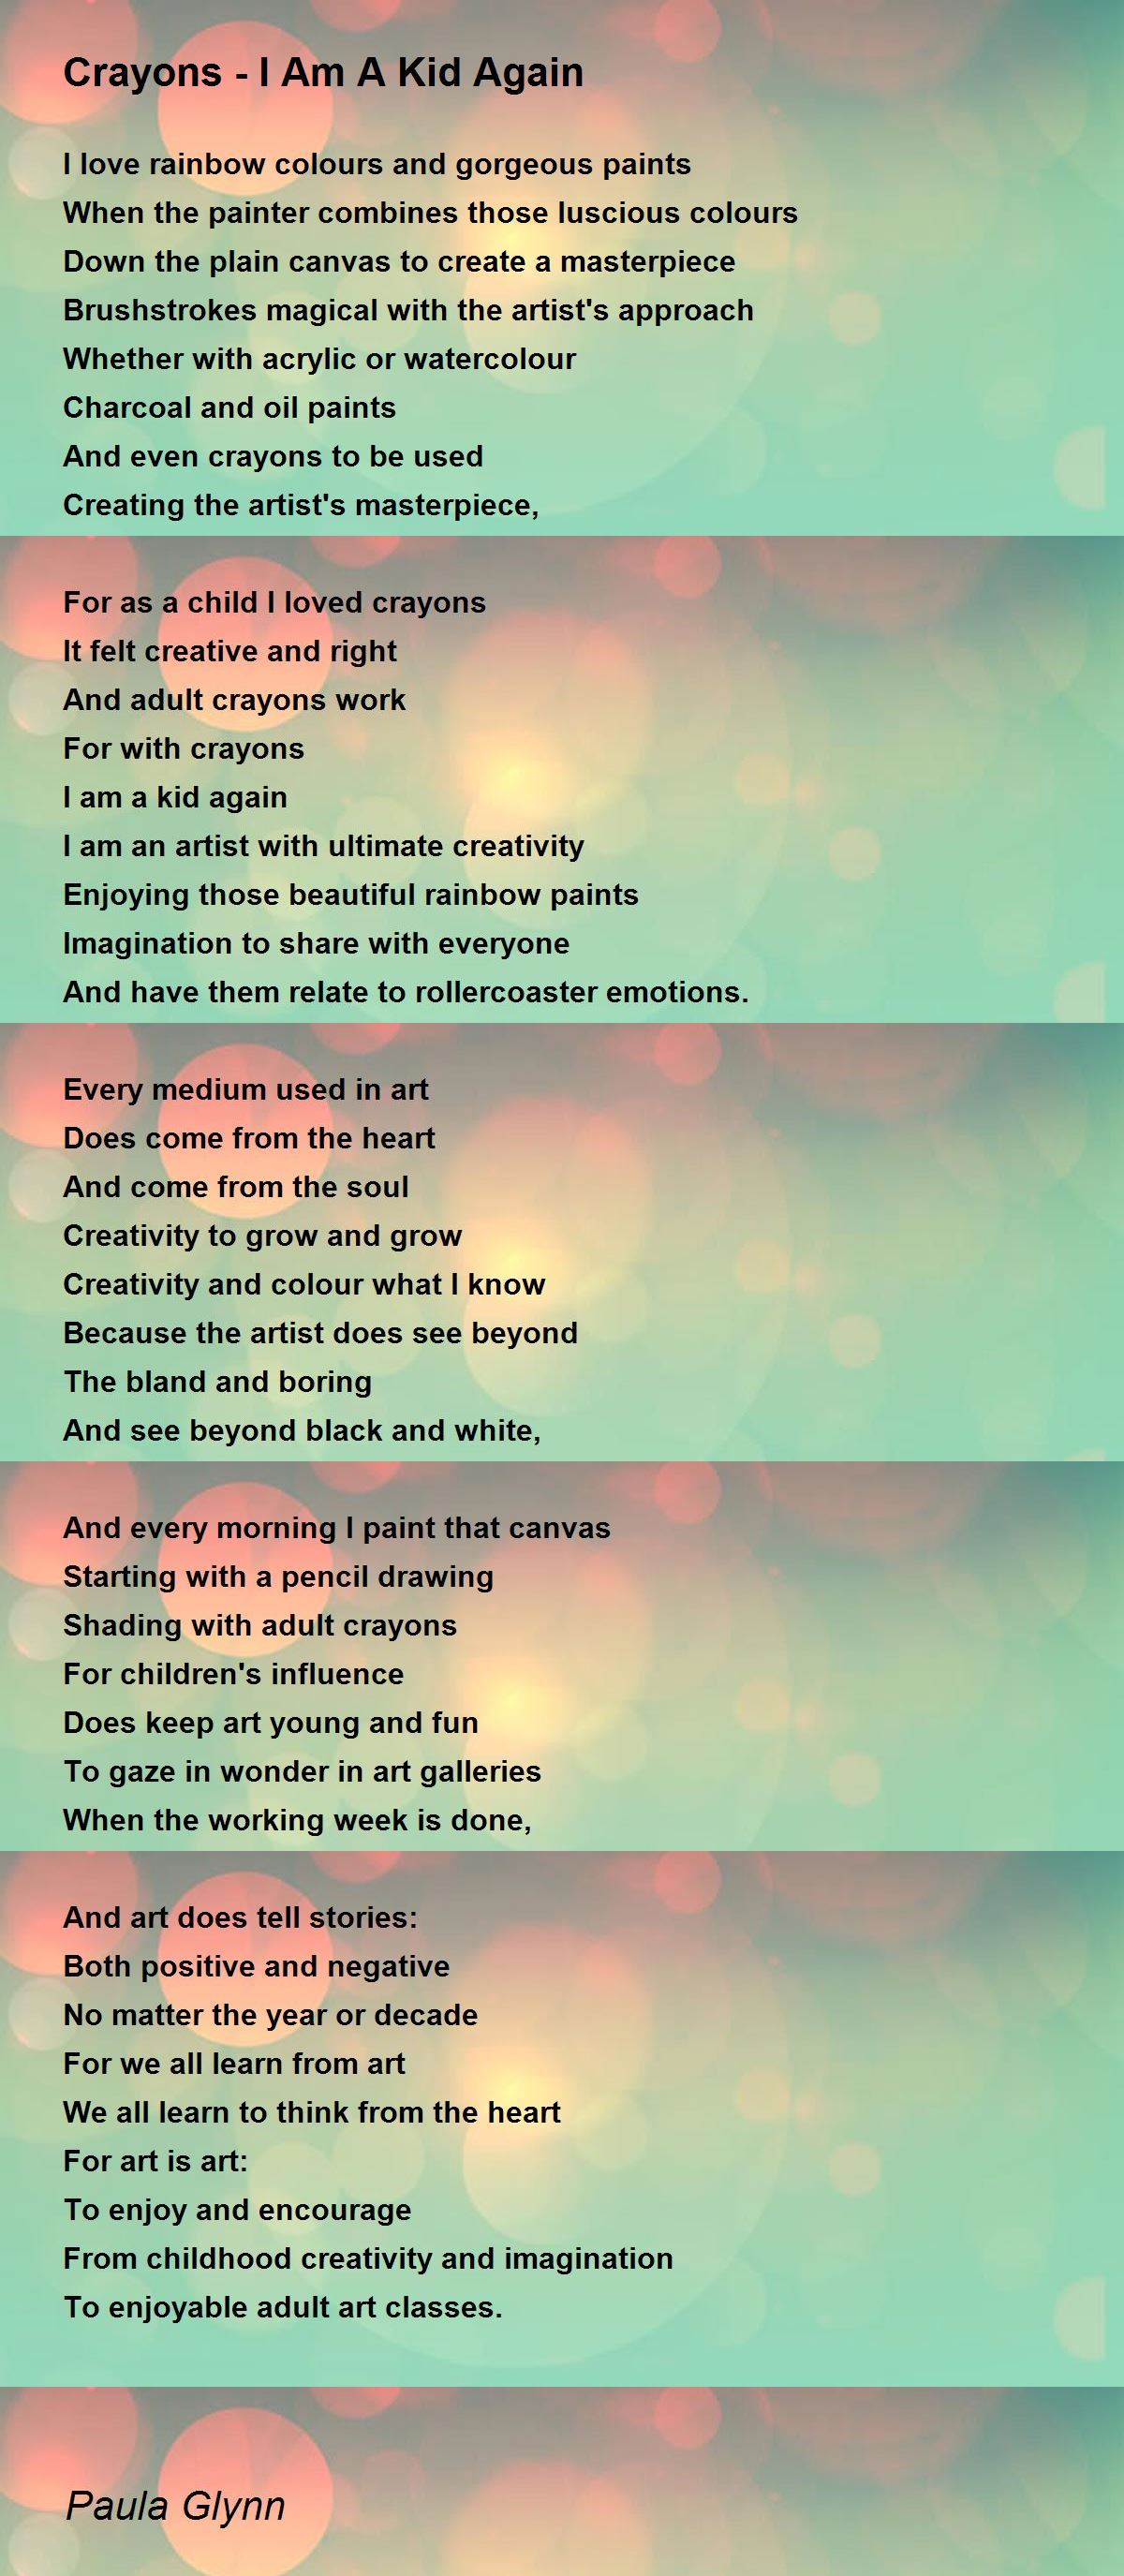 Crayons - I Am A Kid Again - Crayons - I Am A Kid Again Poem by Paula Glynn